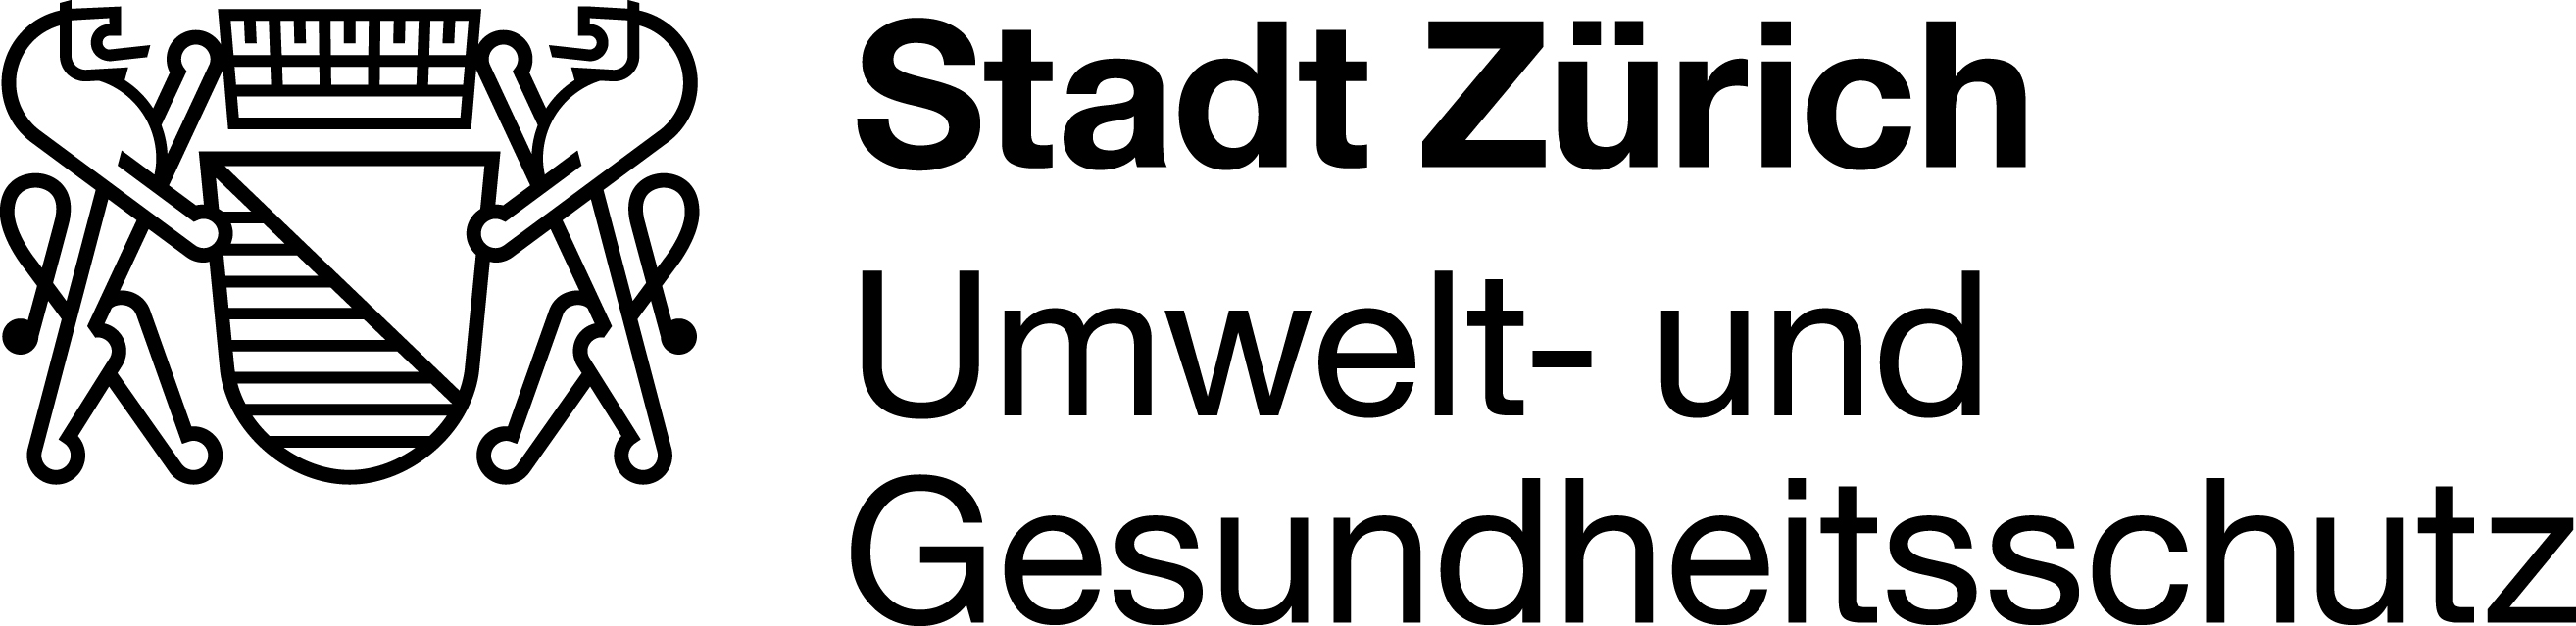 logo stzh ugz cmyk schwarz print a3 a4 a5